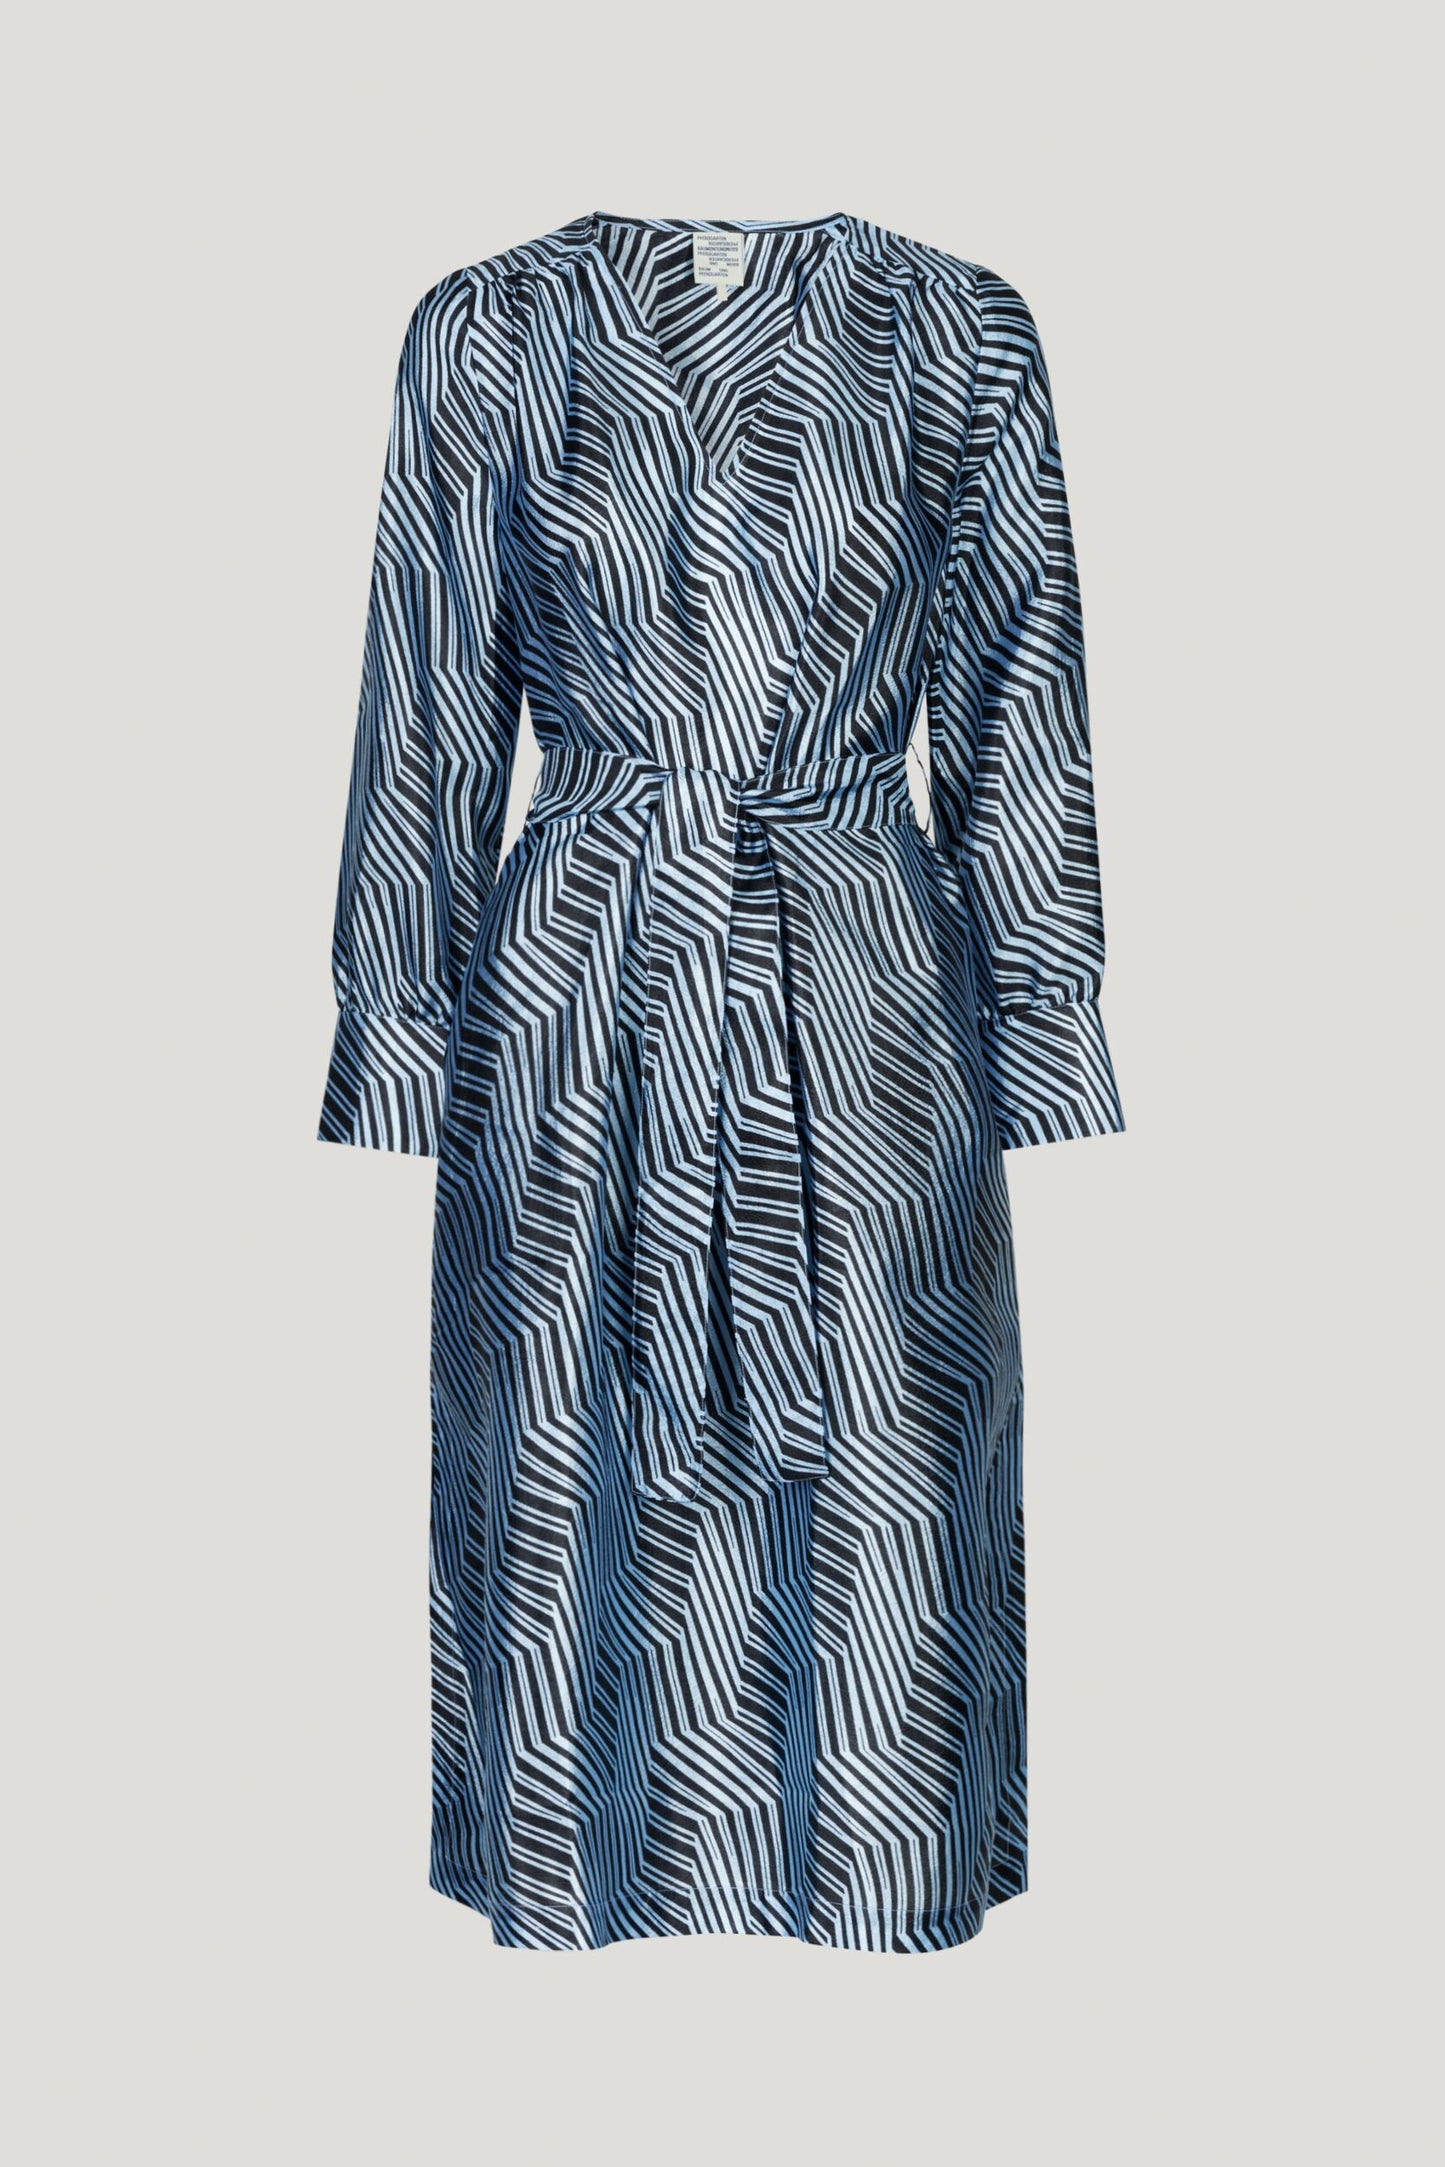 Aradina Dress - Blue Zebra by Baum und Pferdgarten